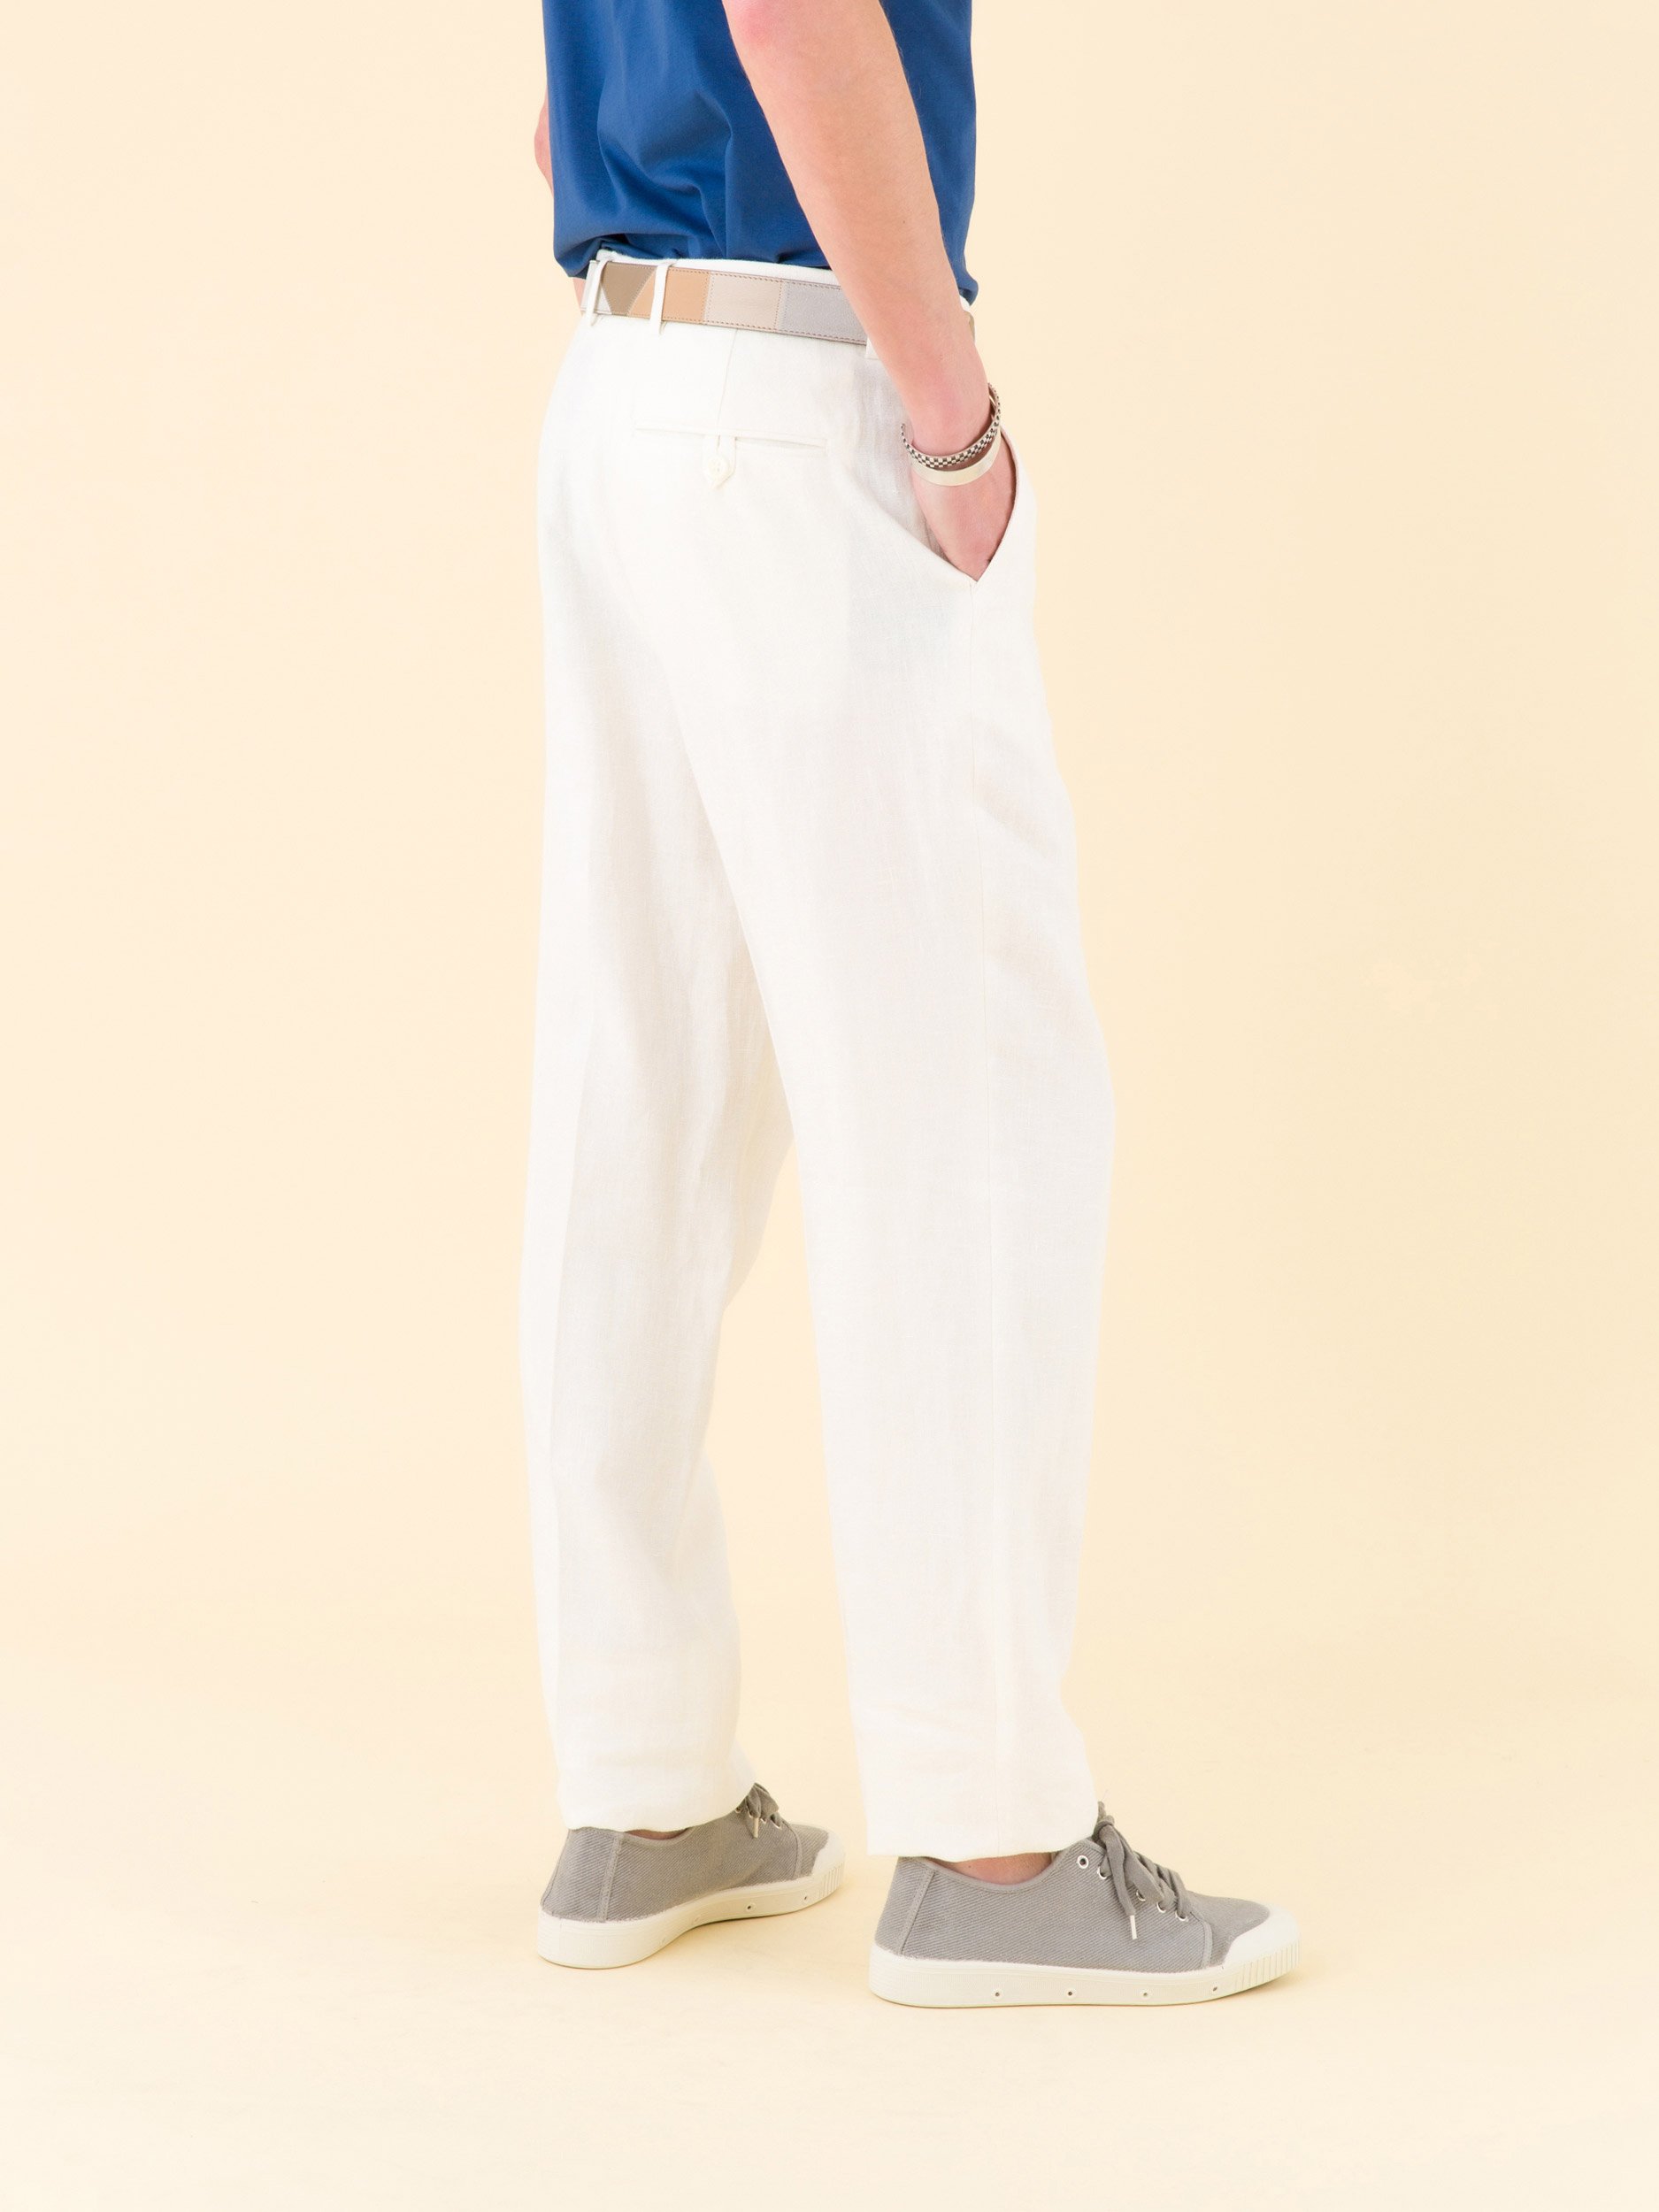 Men's Casual Summer Flat Front Pants in 100% Linen by BOHIO Men's Casual  Summer Flat Front Pants in 100% Linen by BOHIO – Casual Tropical Wear